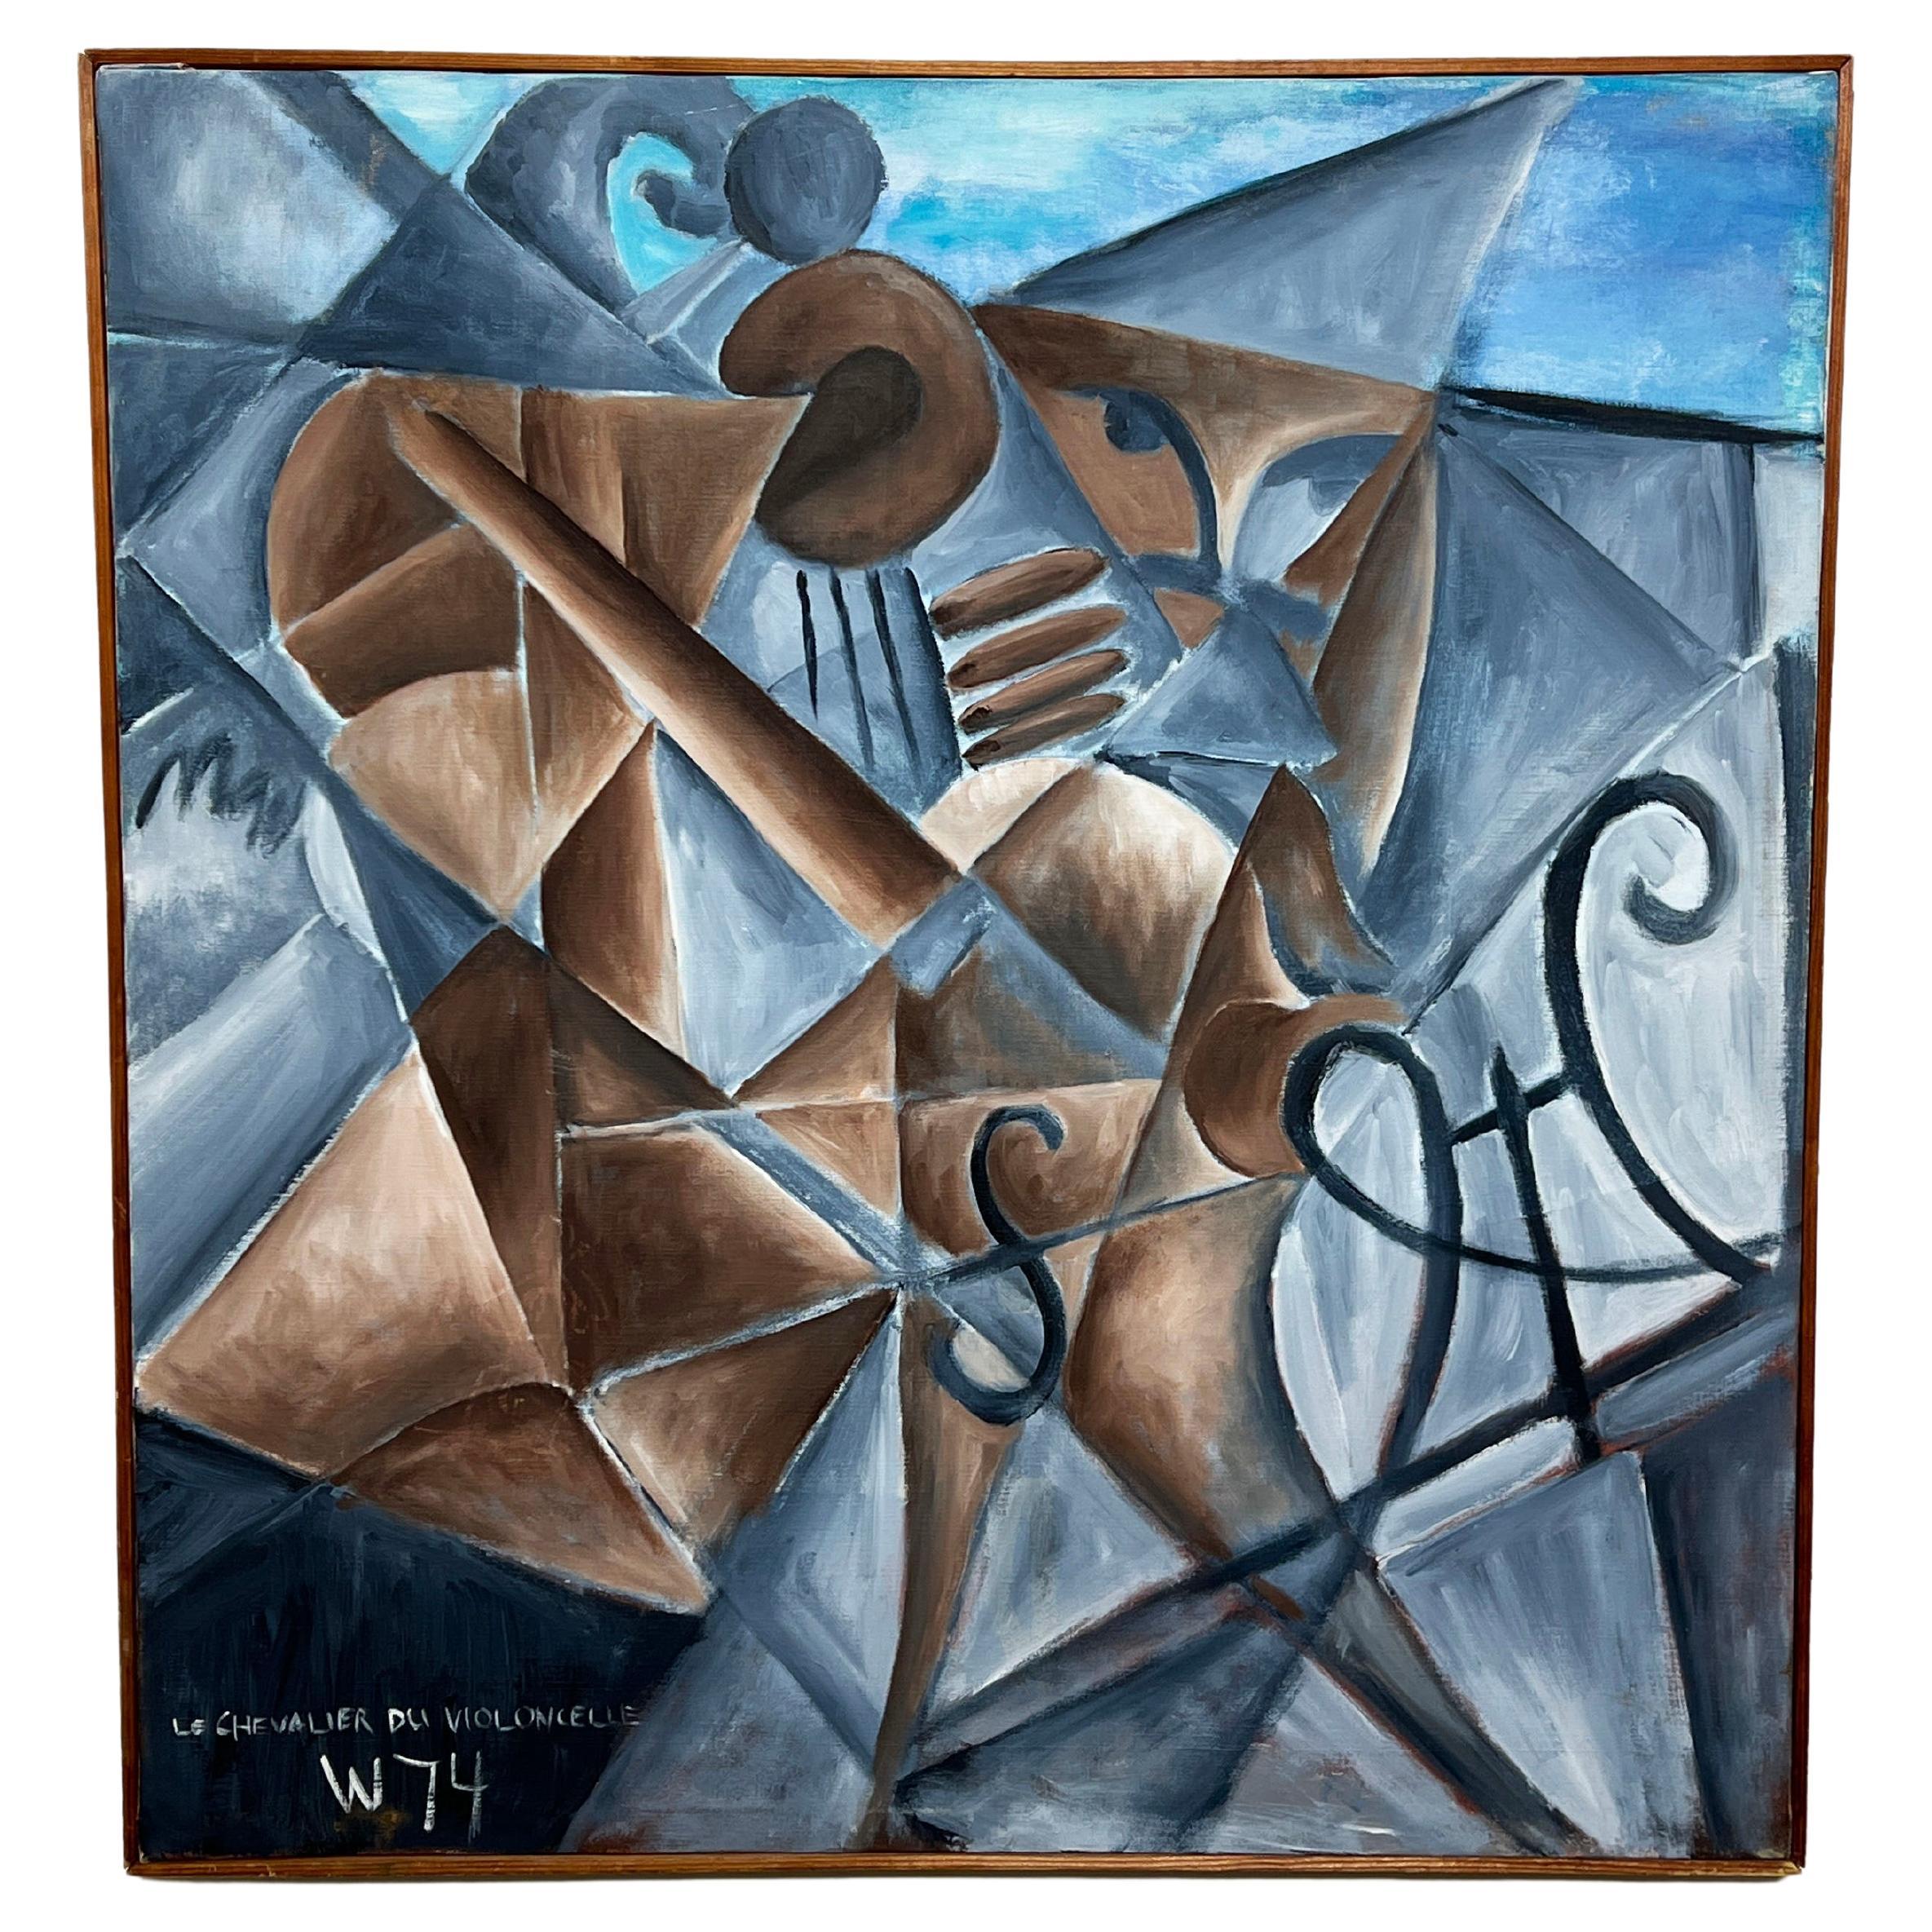 Peinture abstraite cubiste intitulée « Le chevalier du Cello » et datée de 1974